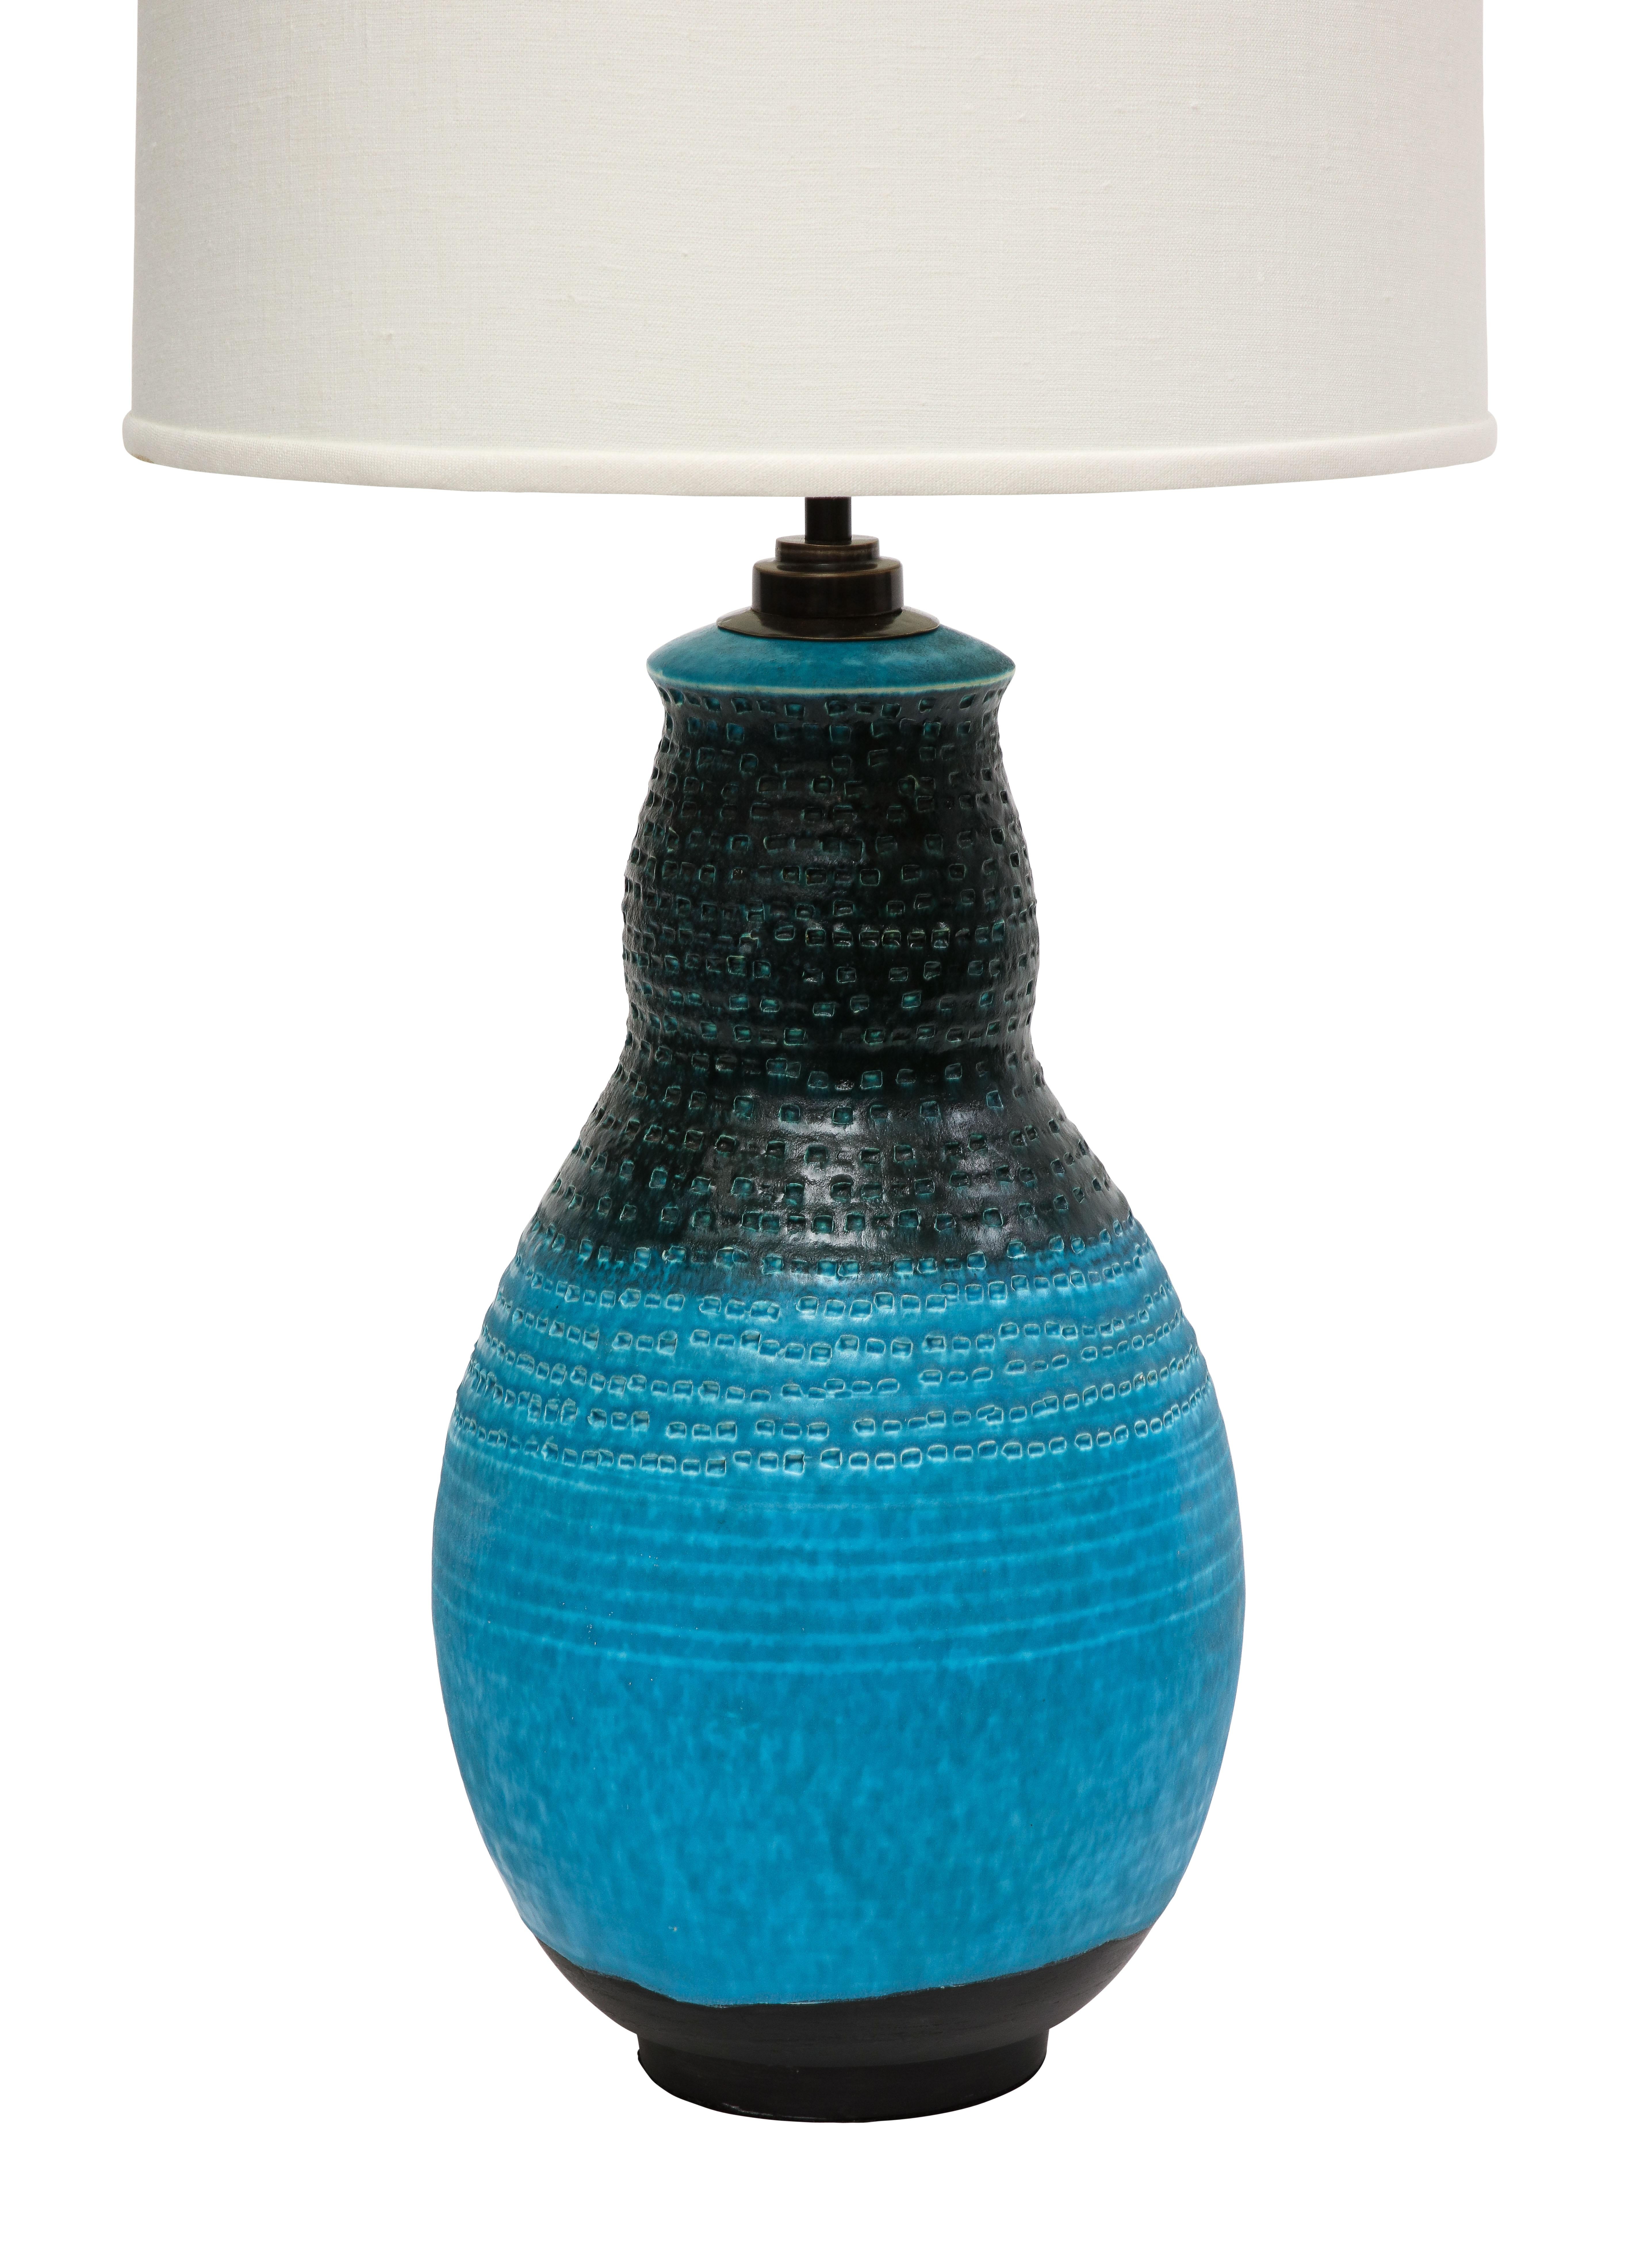 Italian Alvino Bagni Table Lamp, Ceramic, Blue, Black, Impressed